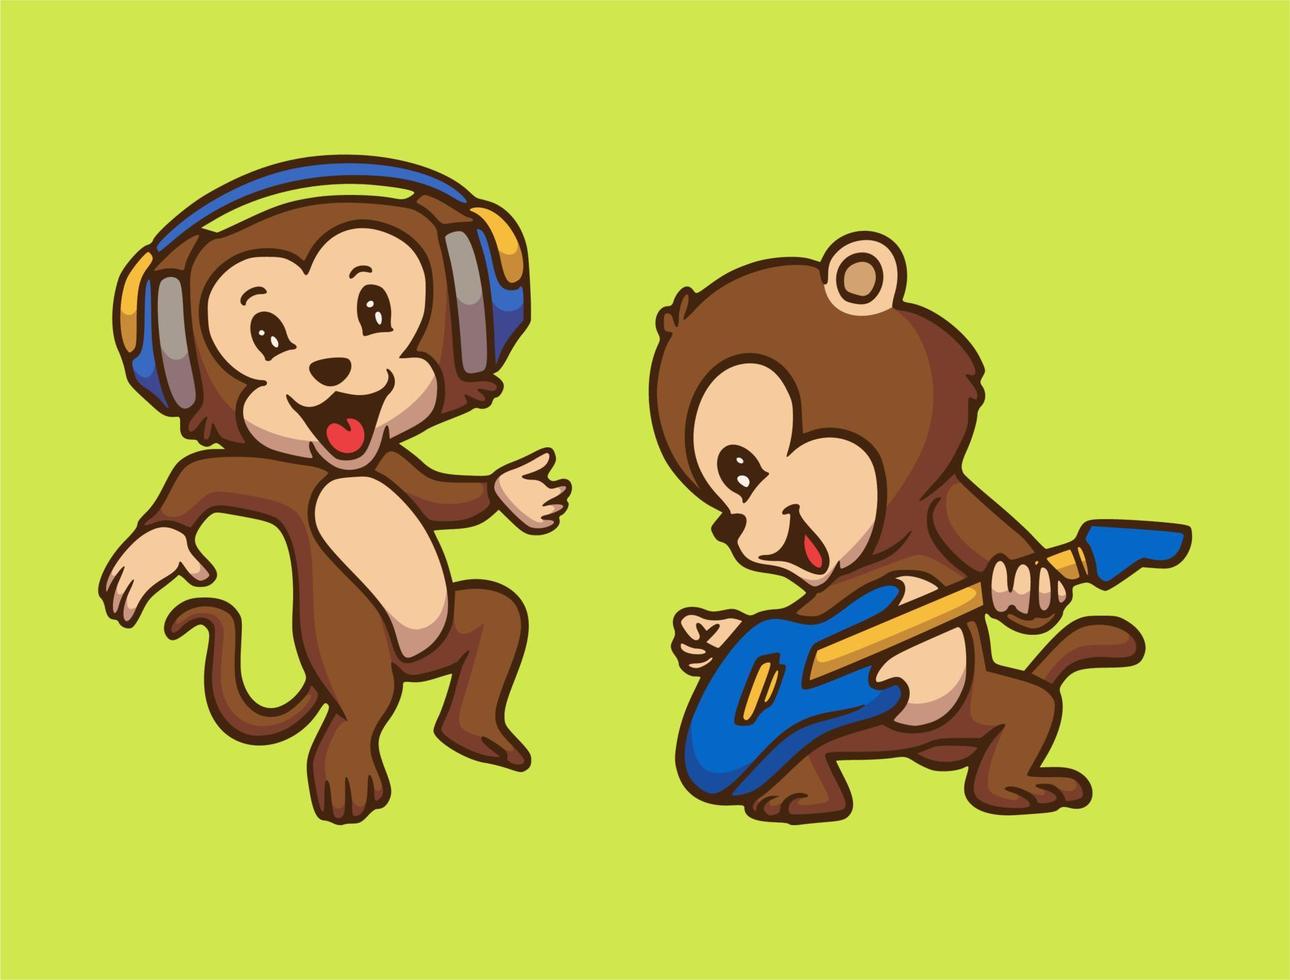 cartoon dier ontwerp aap luisteren naar muziek en gitaar spelen schattige mascotte illustratie vector